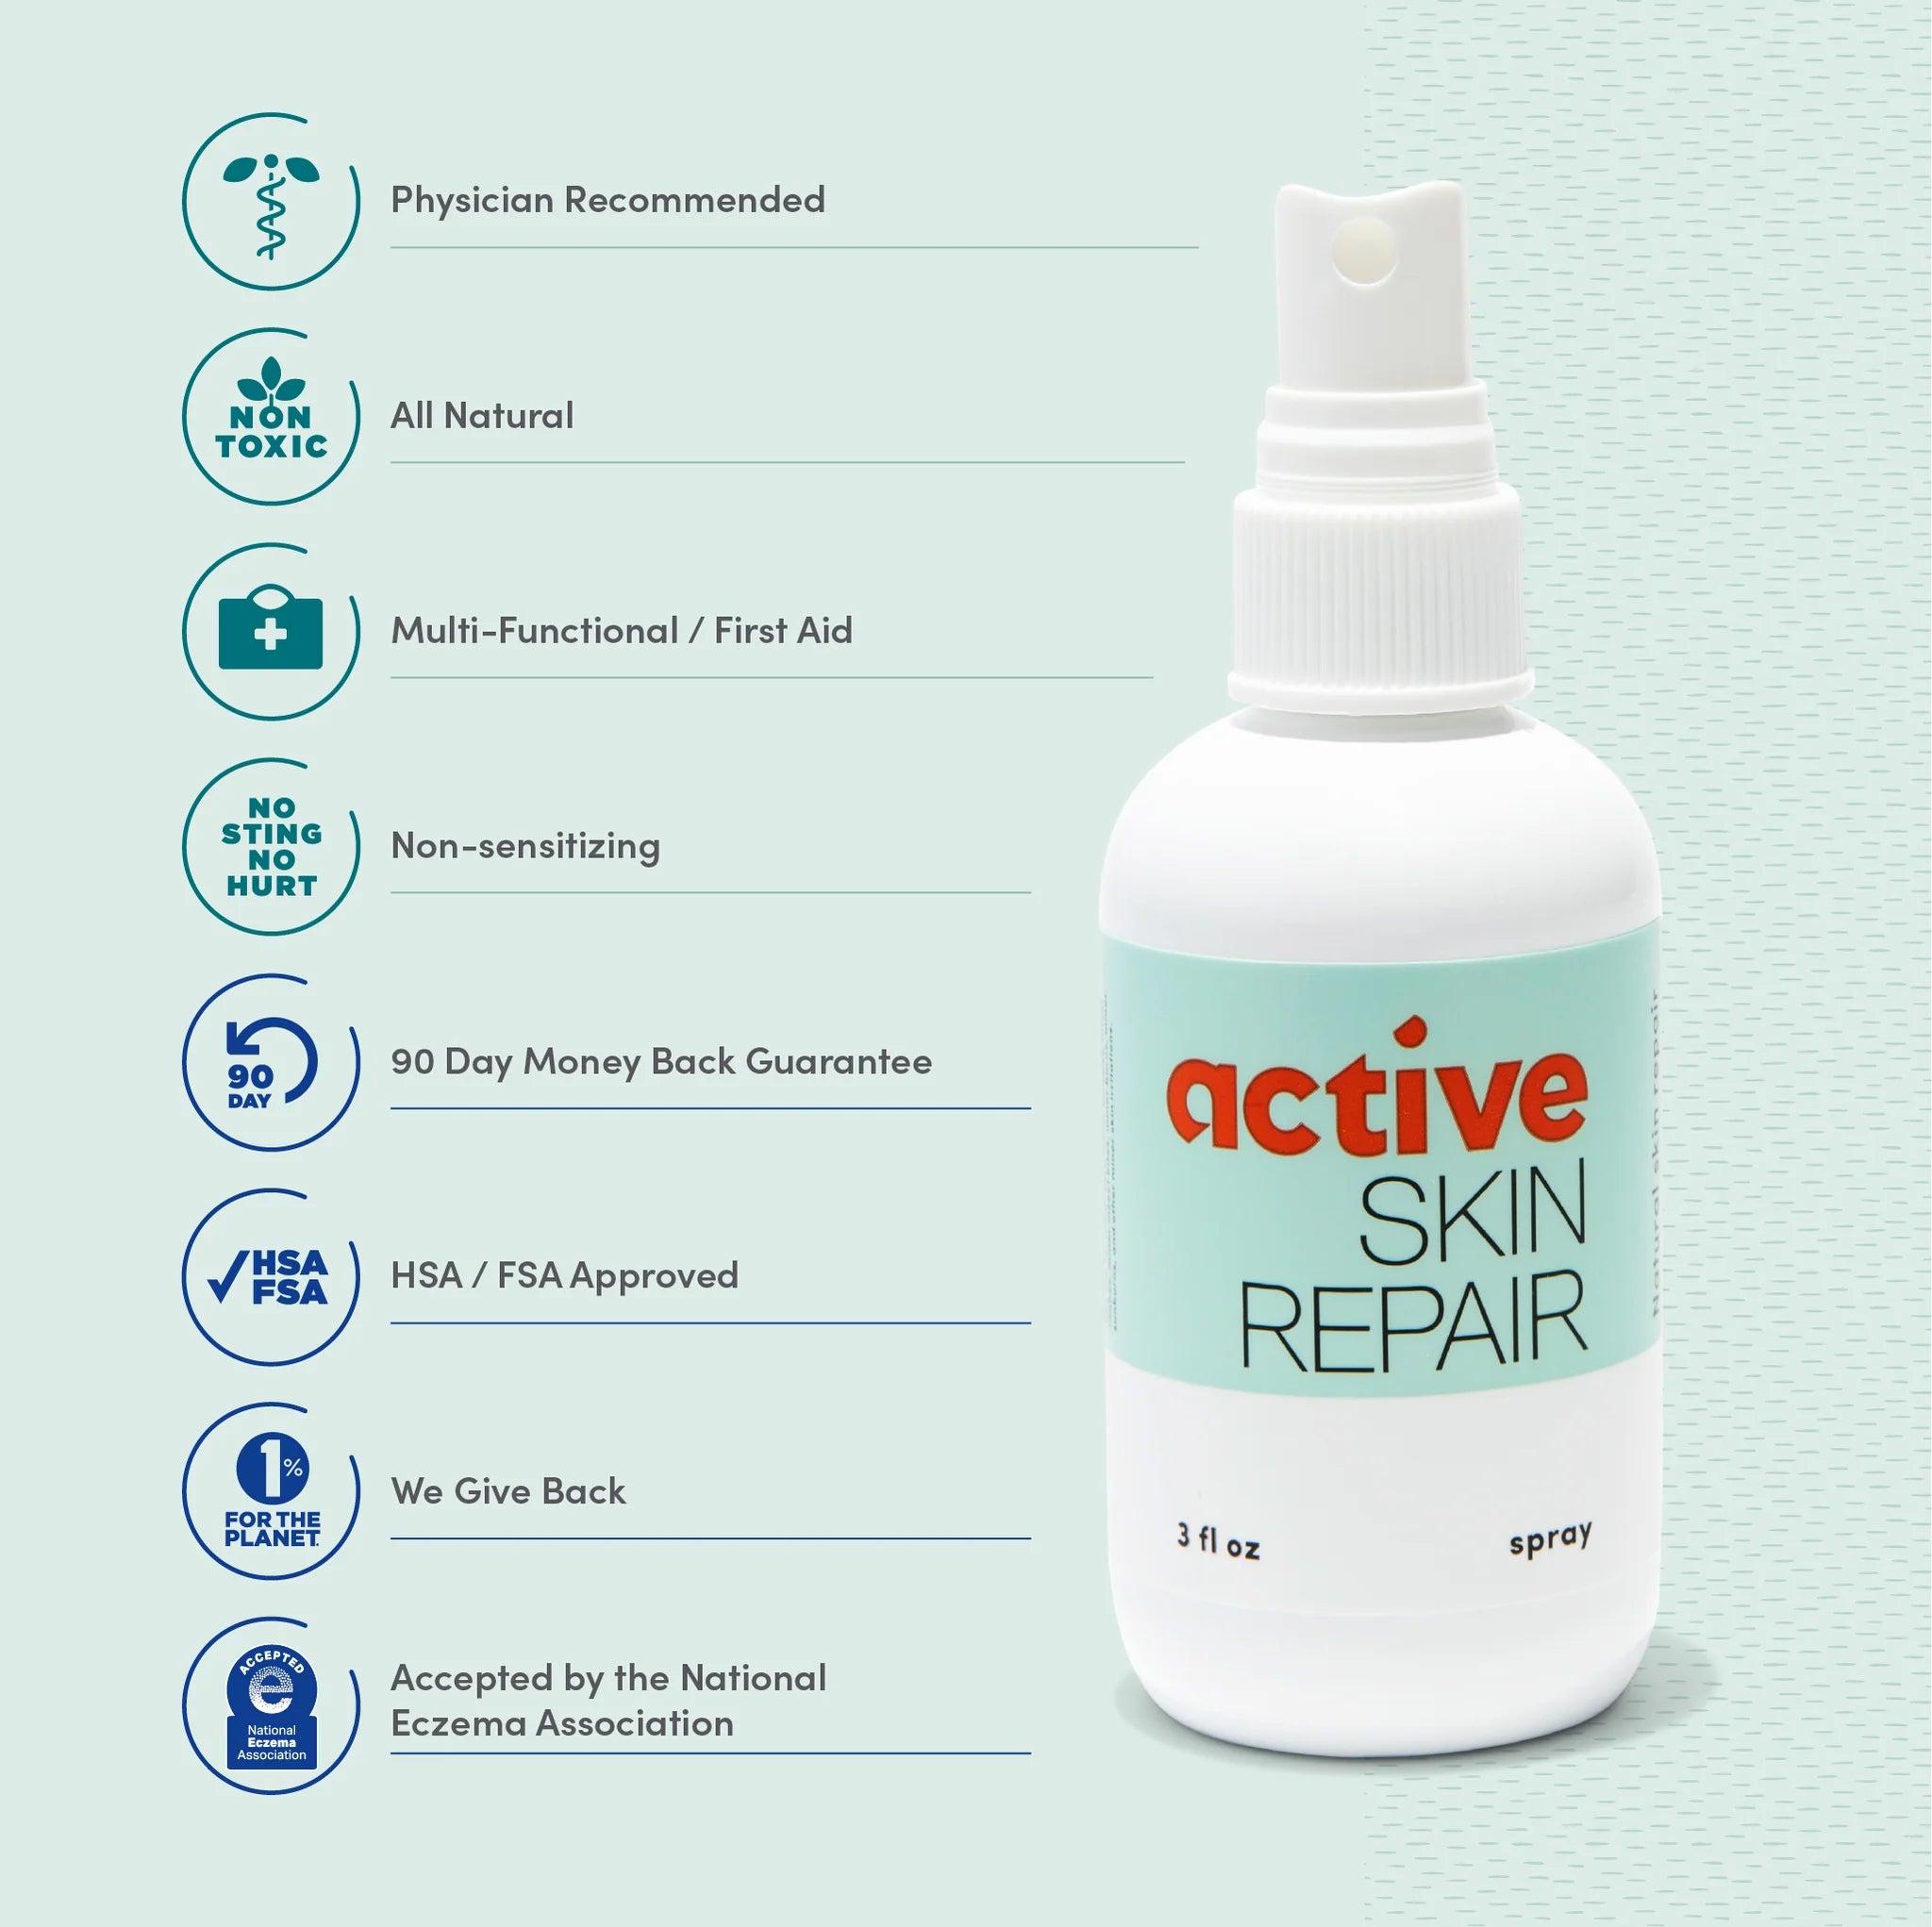 Active Skin Repair - Skin Repair Spray